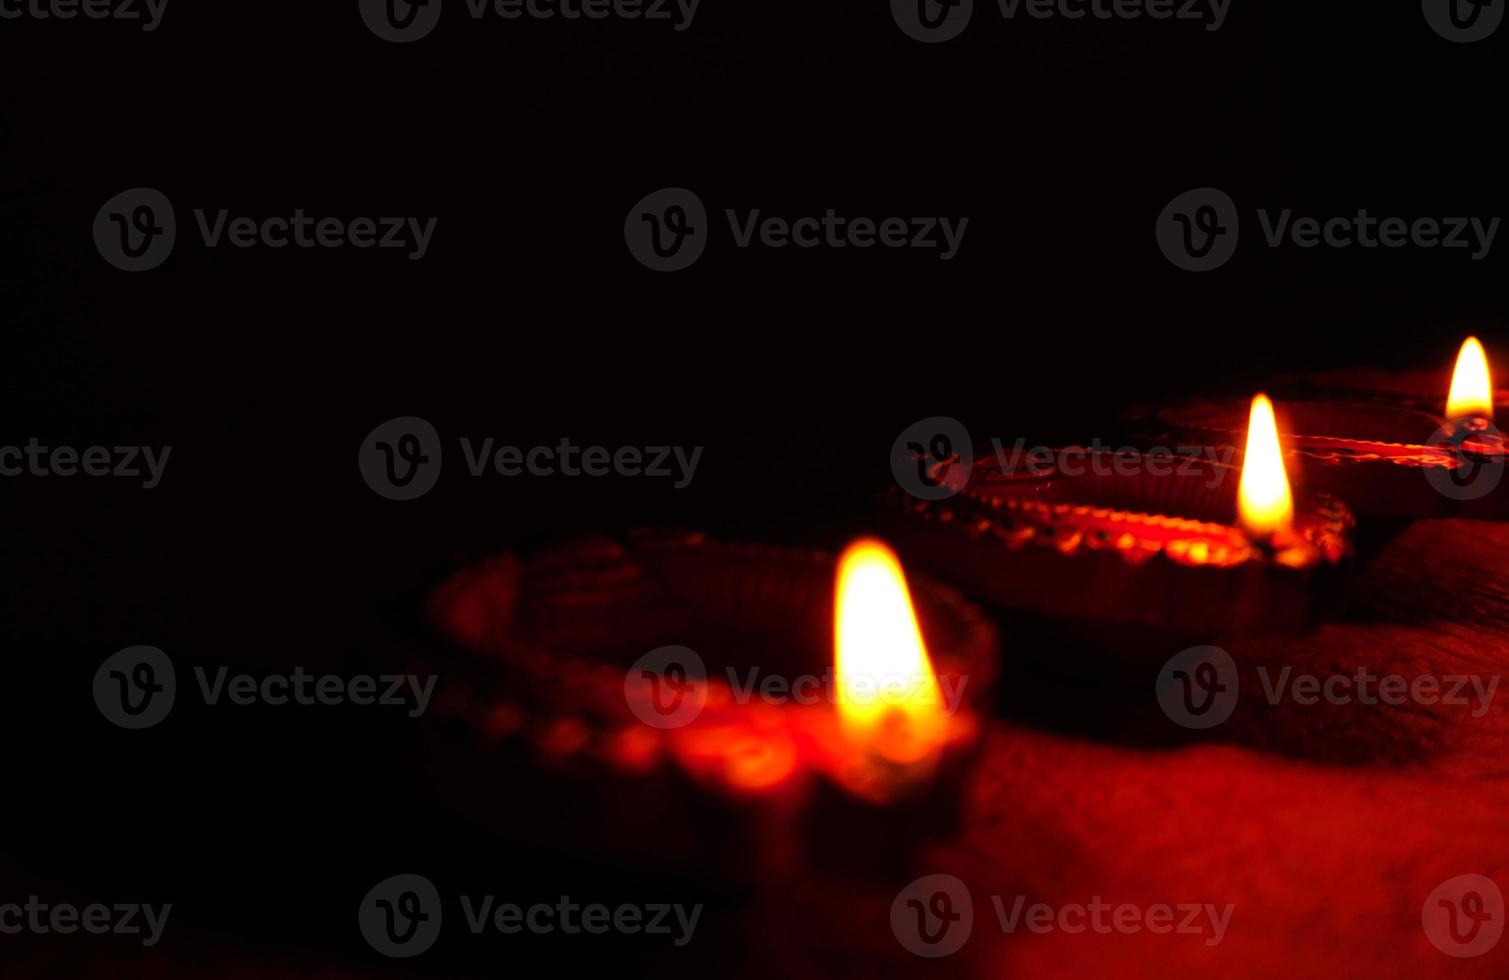 joyeux diwali - lampes diya allumées pendant la célébration de diwali. Des lanternes colorées et décorées sont allumées la nuit à cette occasion avec des rangoli de fleurs, des bonbons et des cadeaux. photo